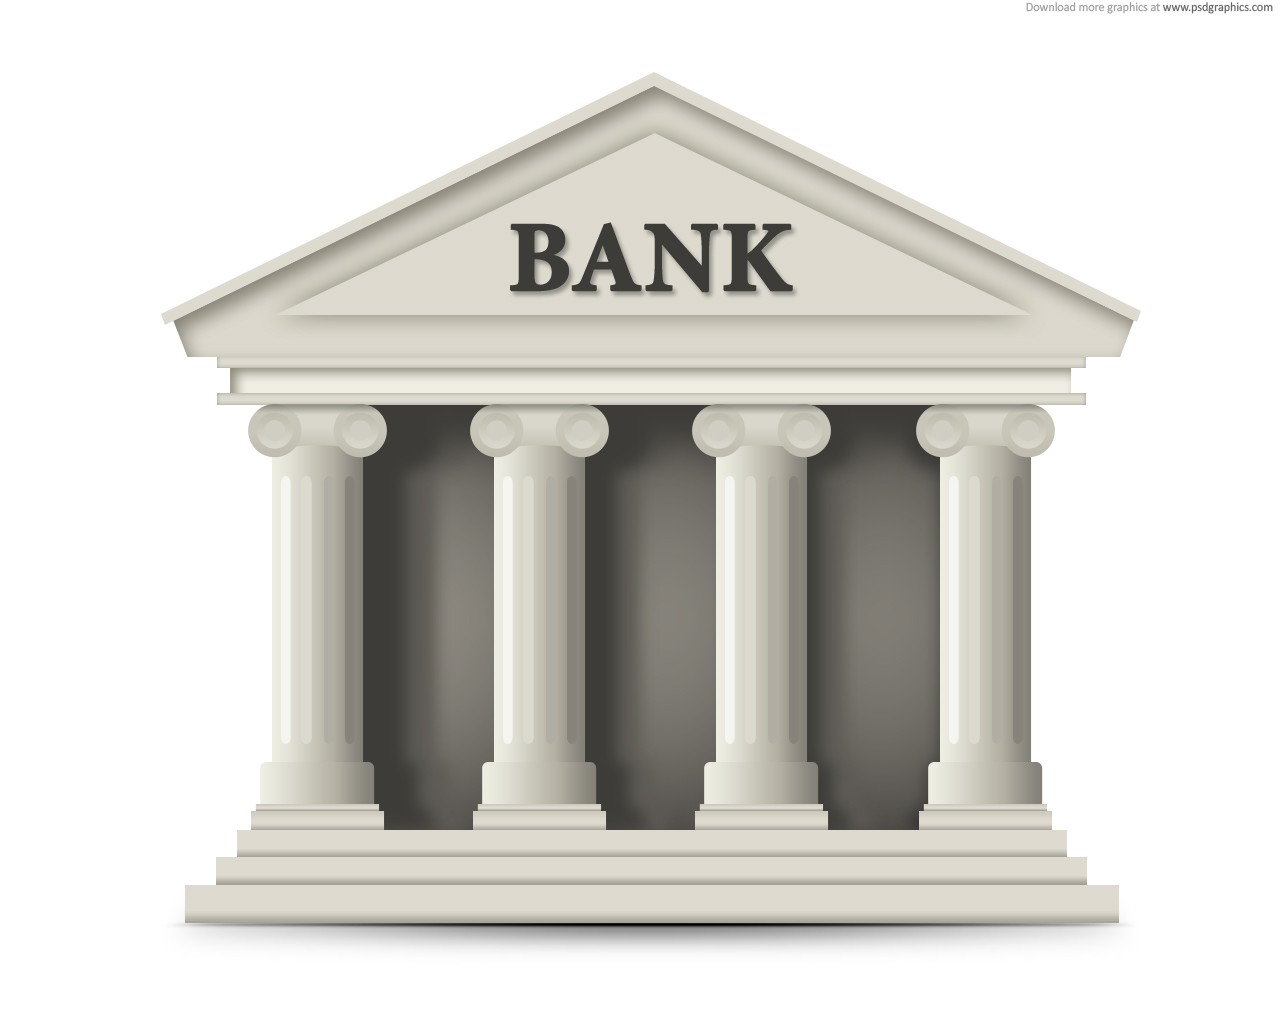 Б н банк. Банк. Здание банка. Банк рисунок. Здание банка на белом фоне.